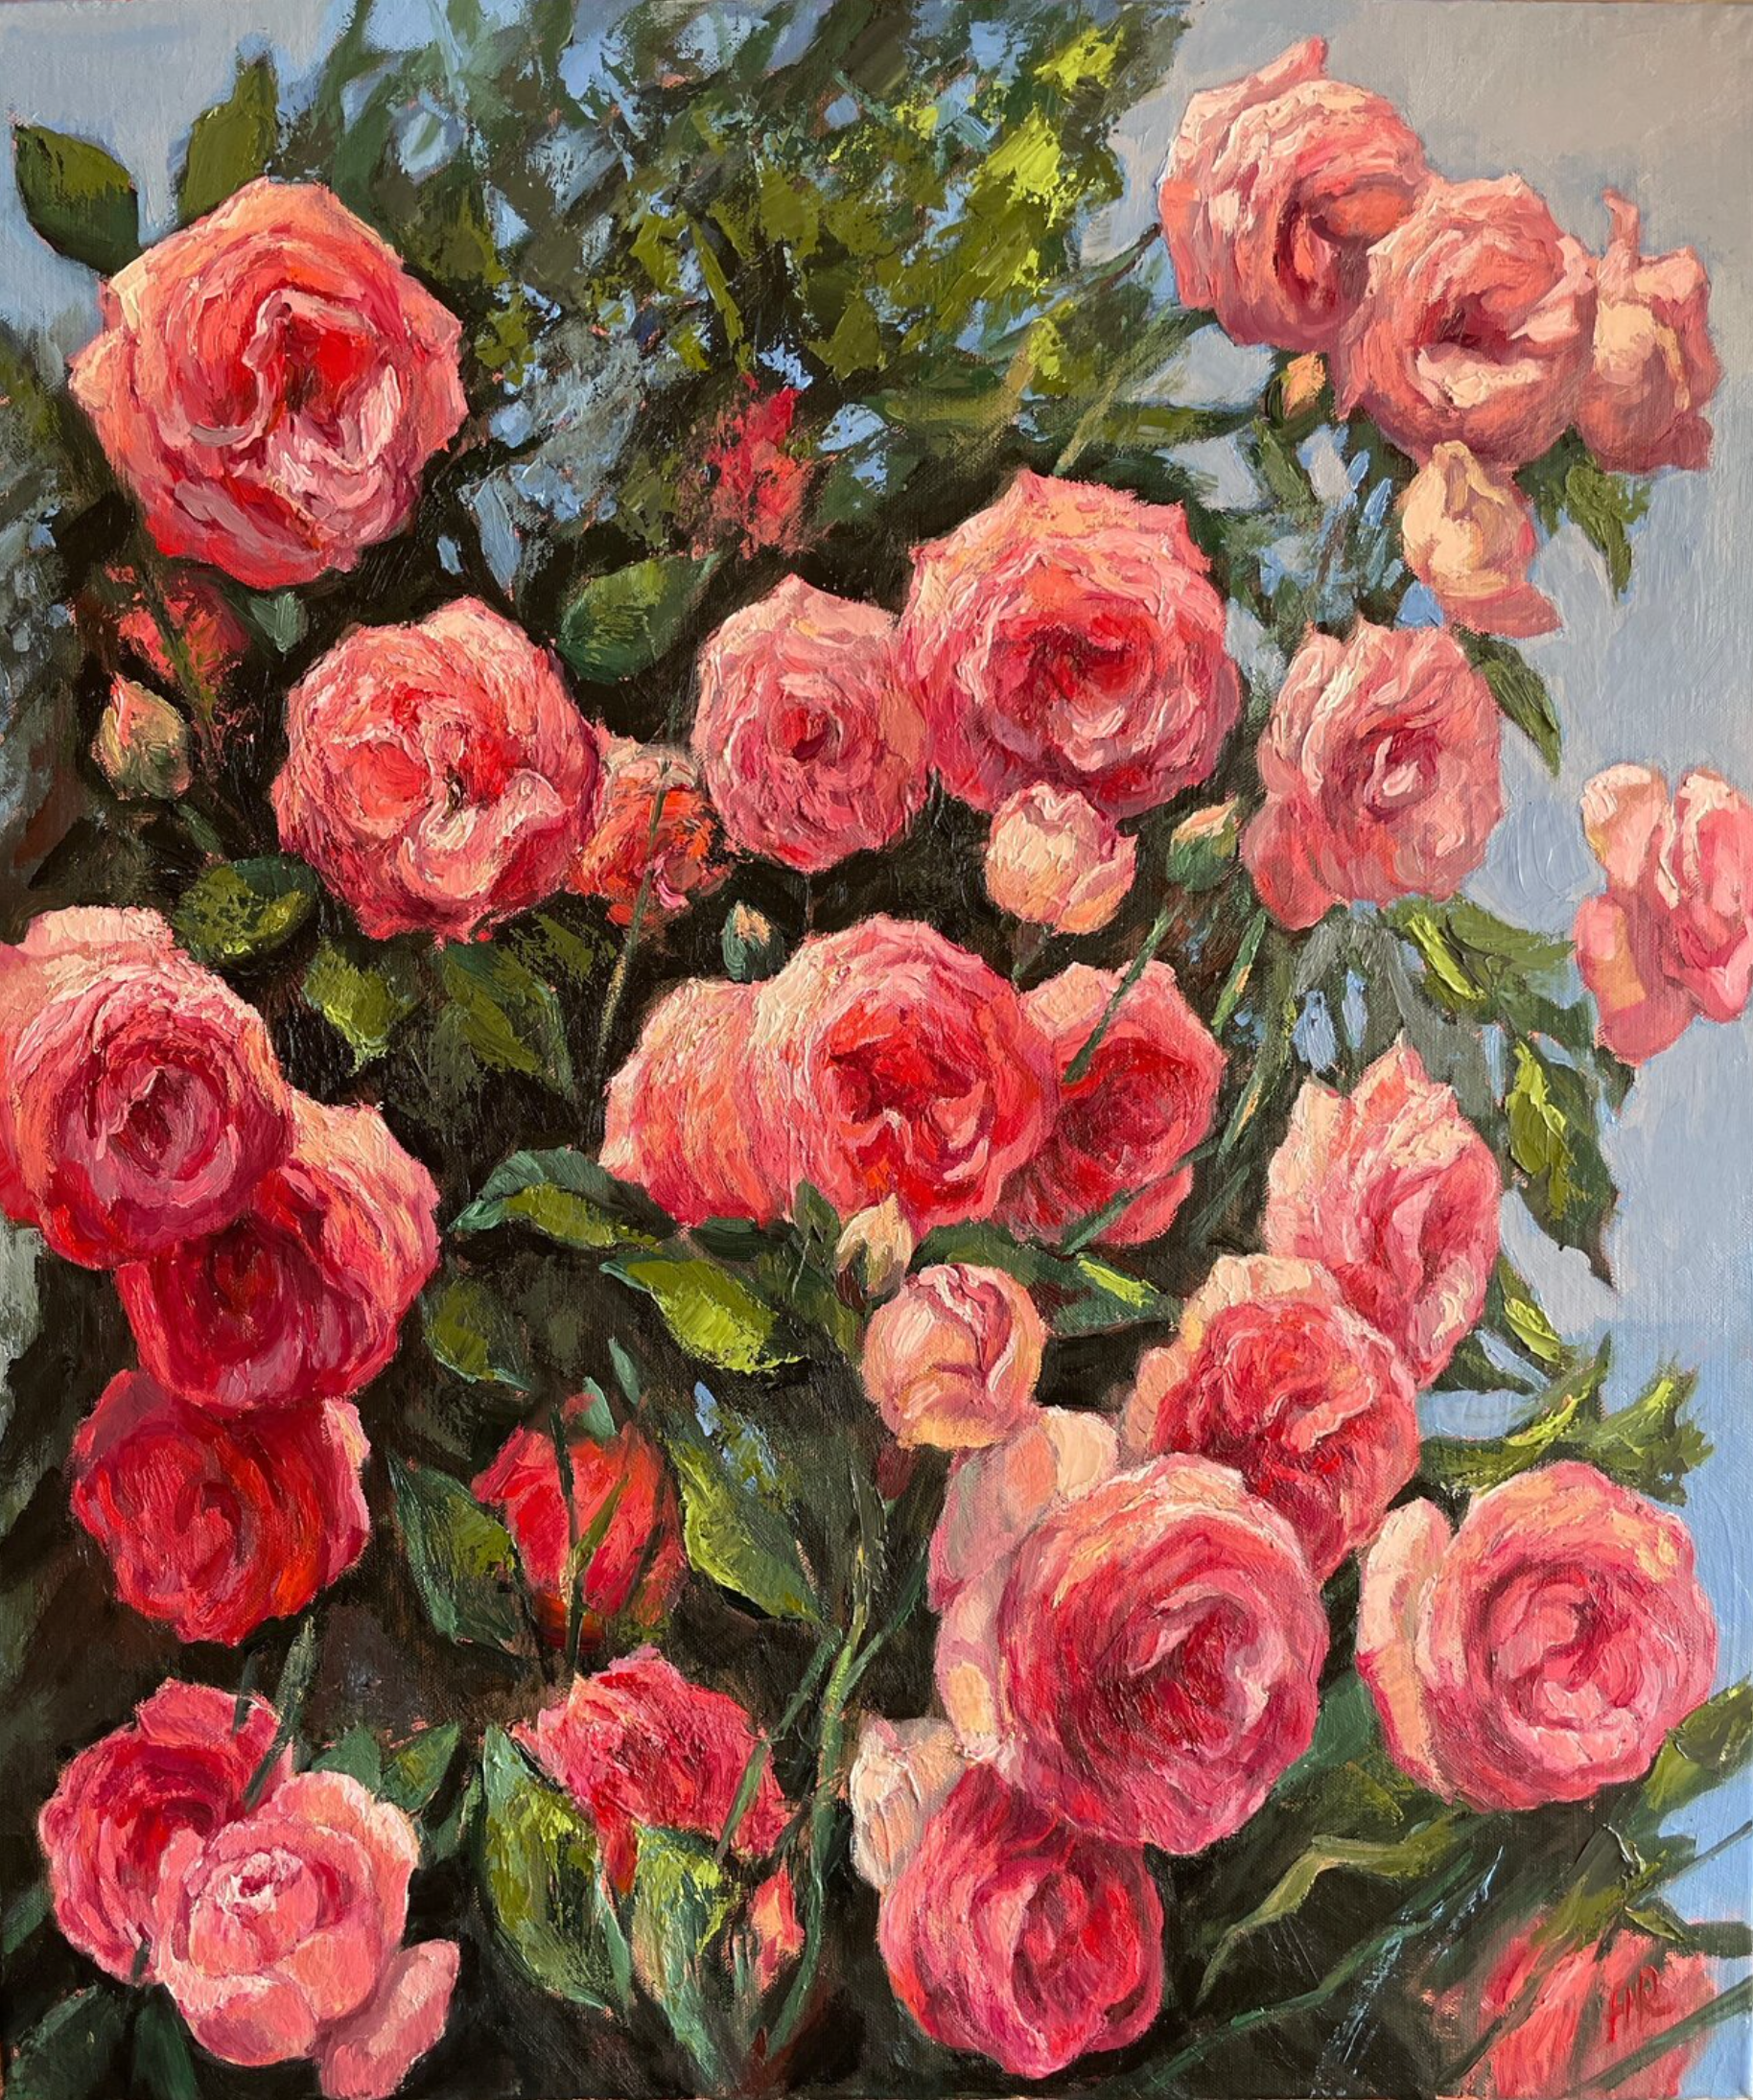 Le tableau "Summer Glimpse" d'Anna Reznikova montre, avec des traits volumineux en technique d'empreinte et peints au pinceau sur la toile, de magnifiques fleurs de rosiers. Les fleurs sont roses, roses et rouges, avec des feuilles vert clair.